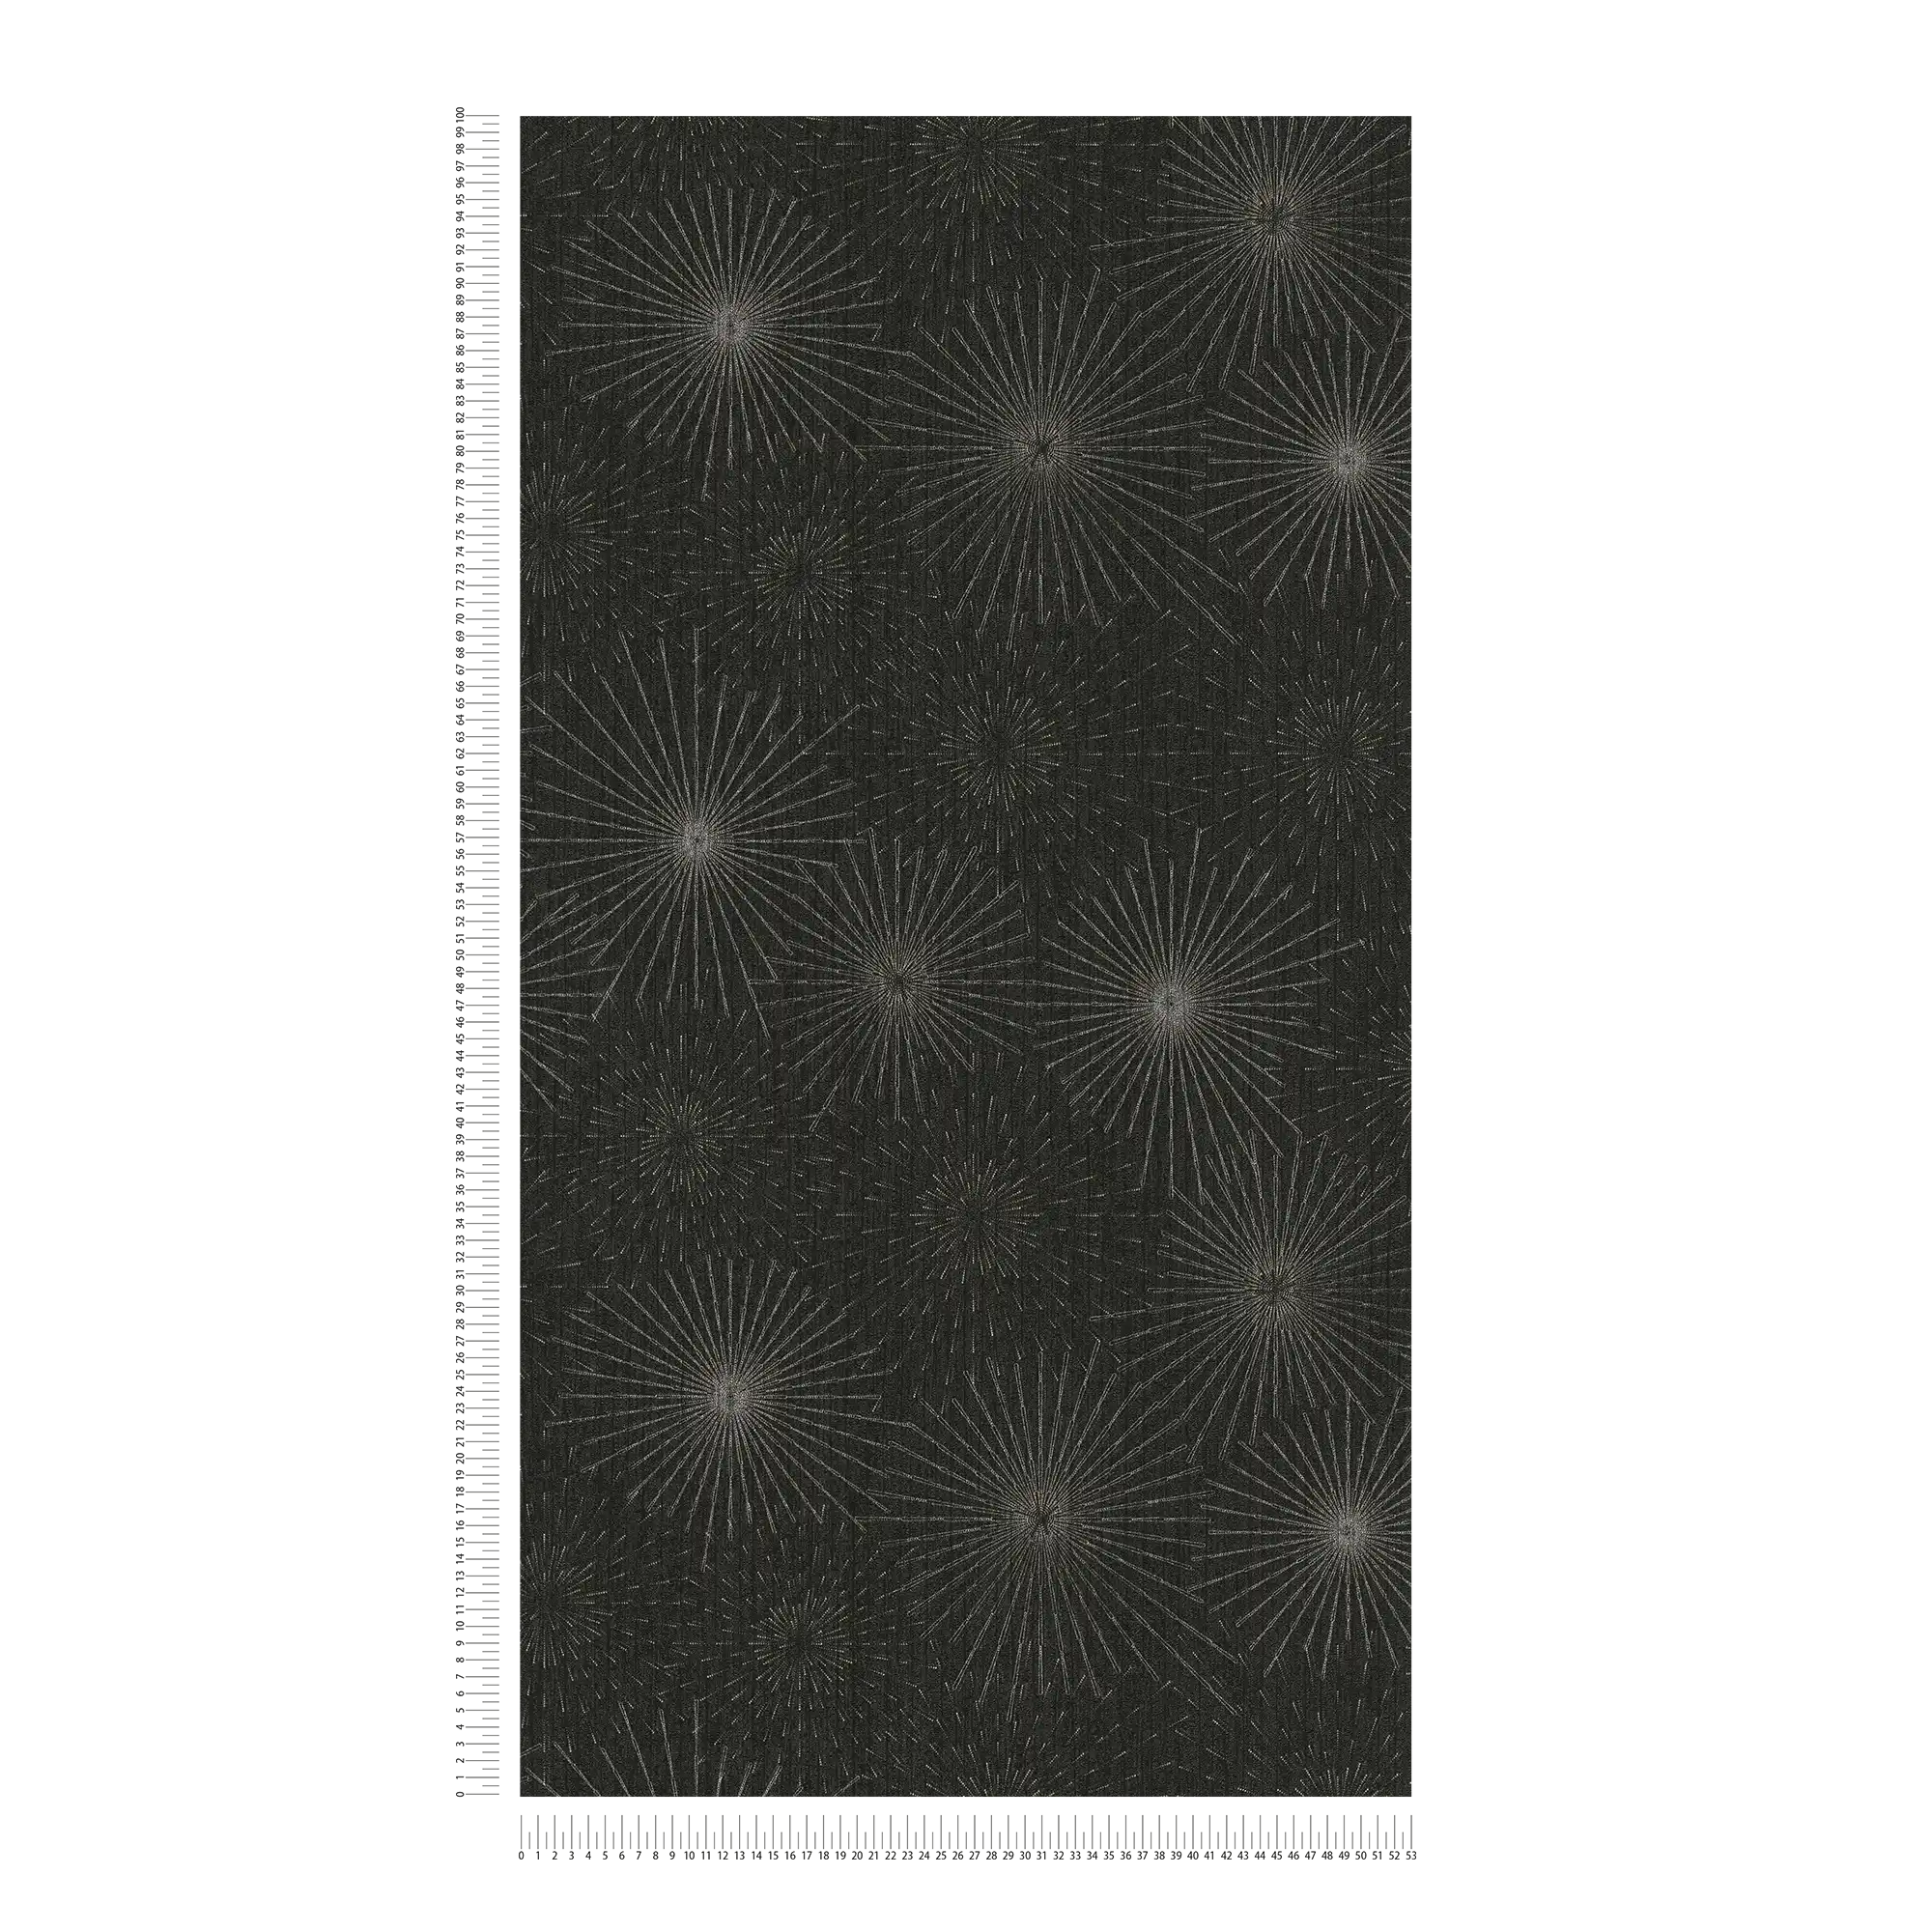             Papier peint rétro motif Starburst des années 50 - noir, métallique
        